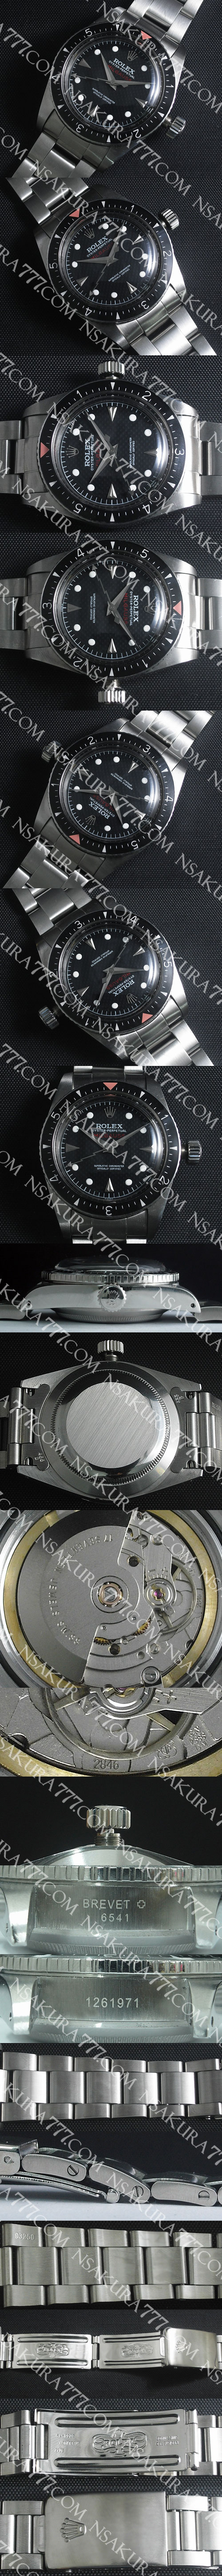 レプリカ時計ロレックス 初代ミルガウス ヴィンテージ Ref. 6541 Swiss ETA社 2846 - ウインドウを閉じる